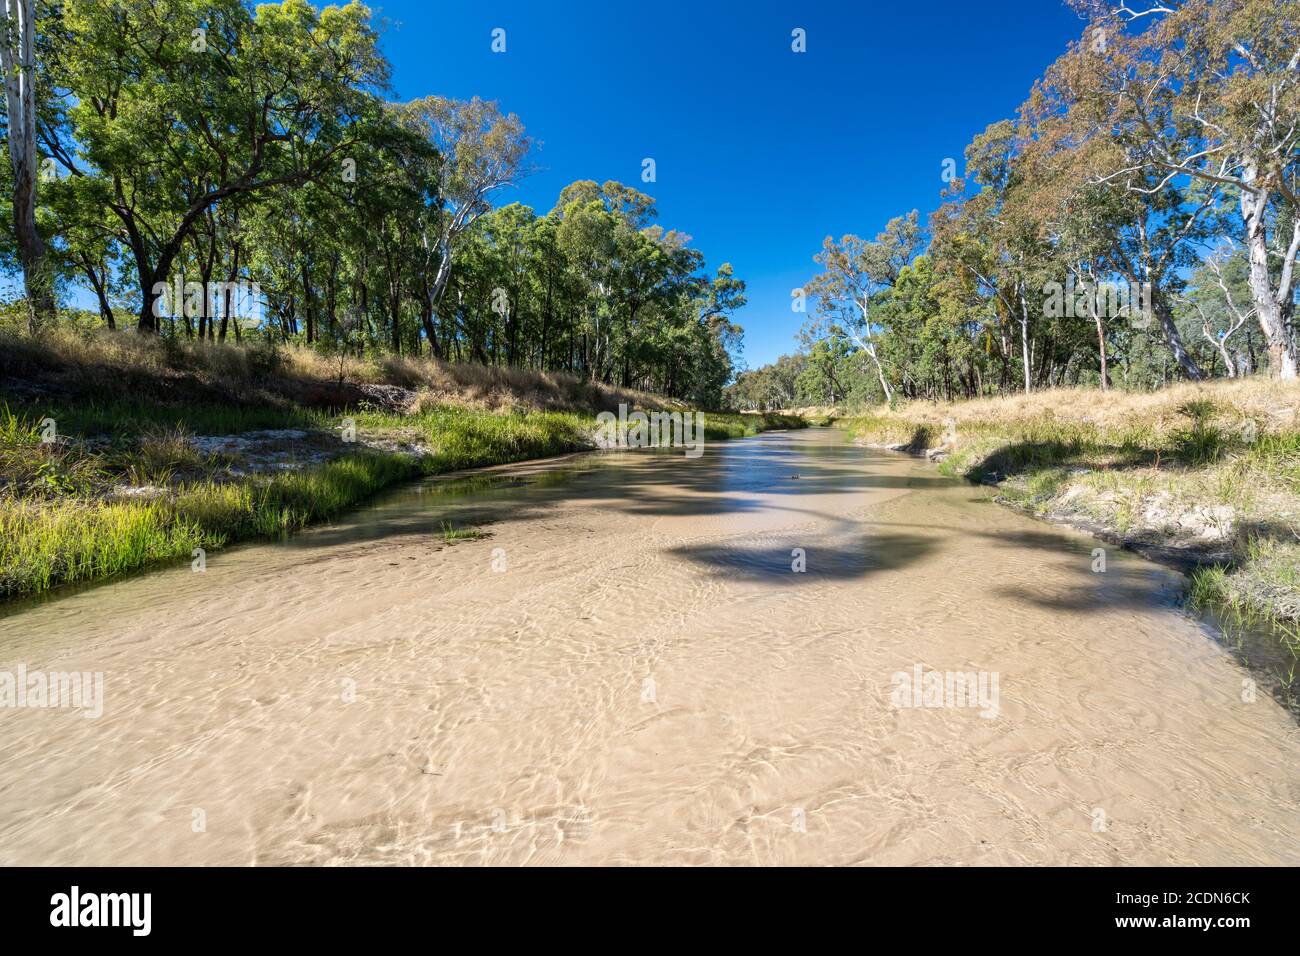 Lit de sable avec eau claire de la rivière Nogoa près de la jonction avec le ruisseau Louisa. Salvator Rosa Section Carnarvon National Park, Queensland, Australie Banque D'Images